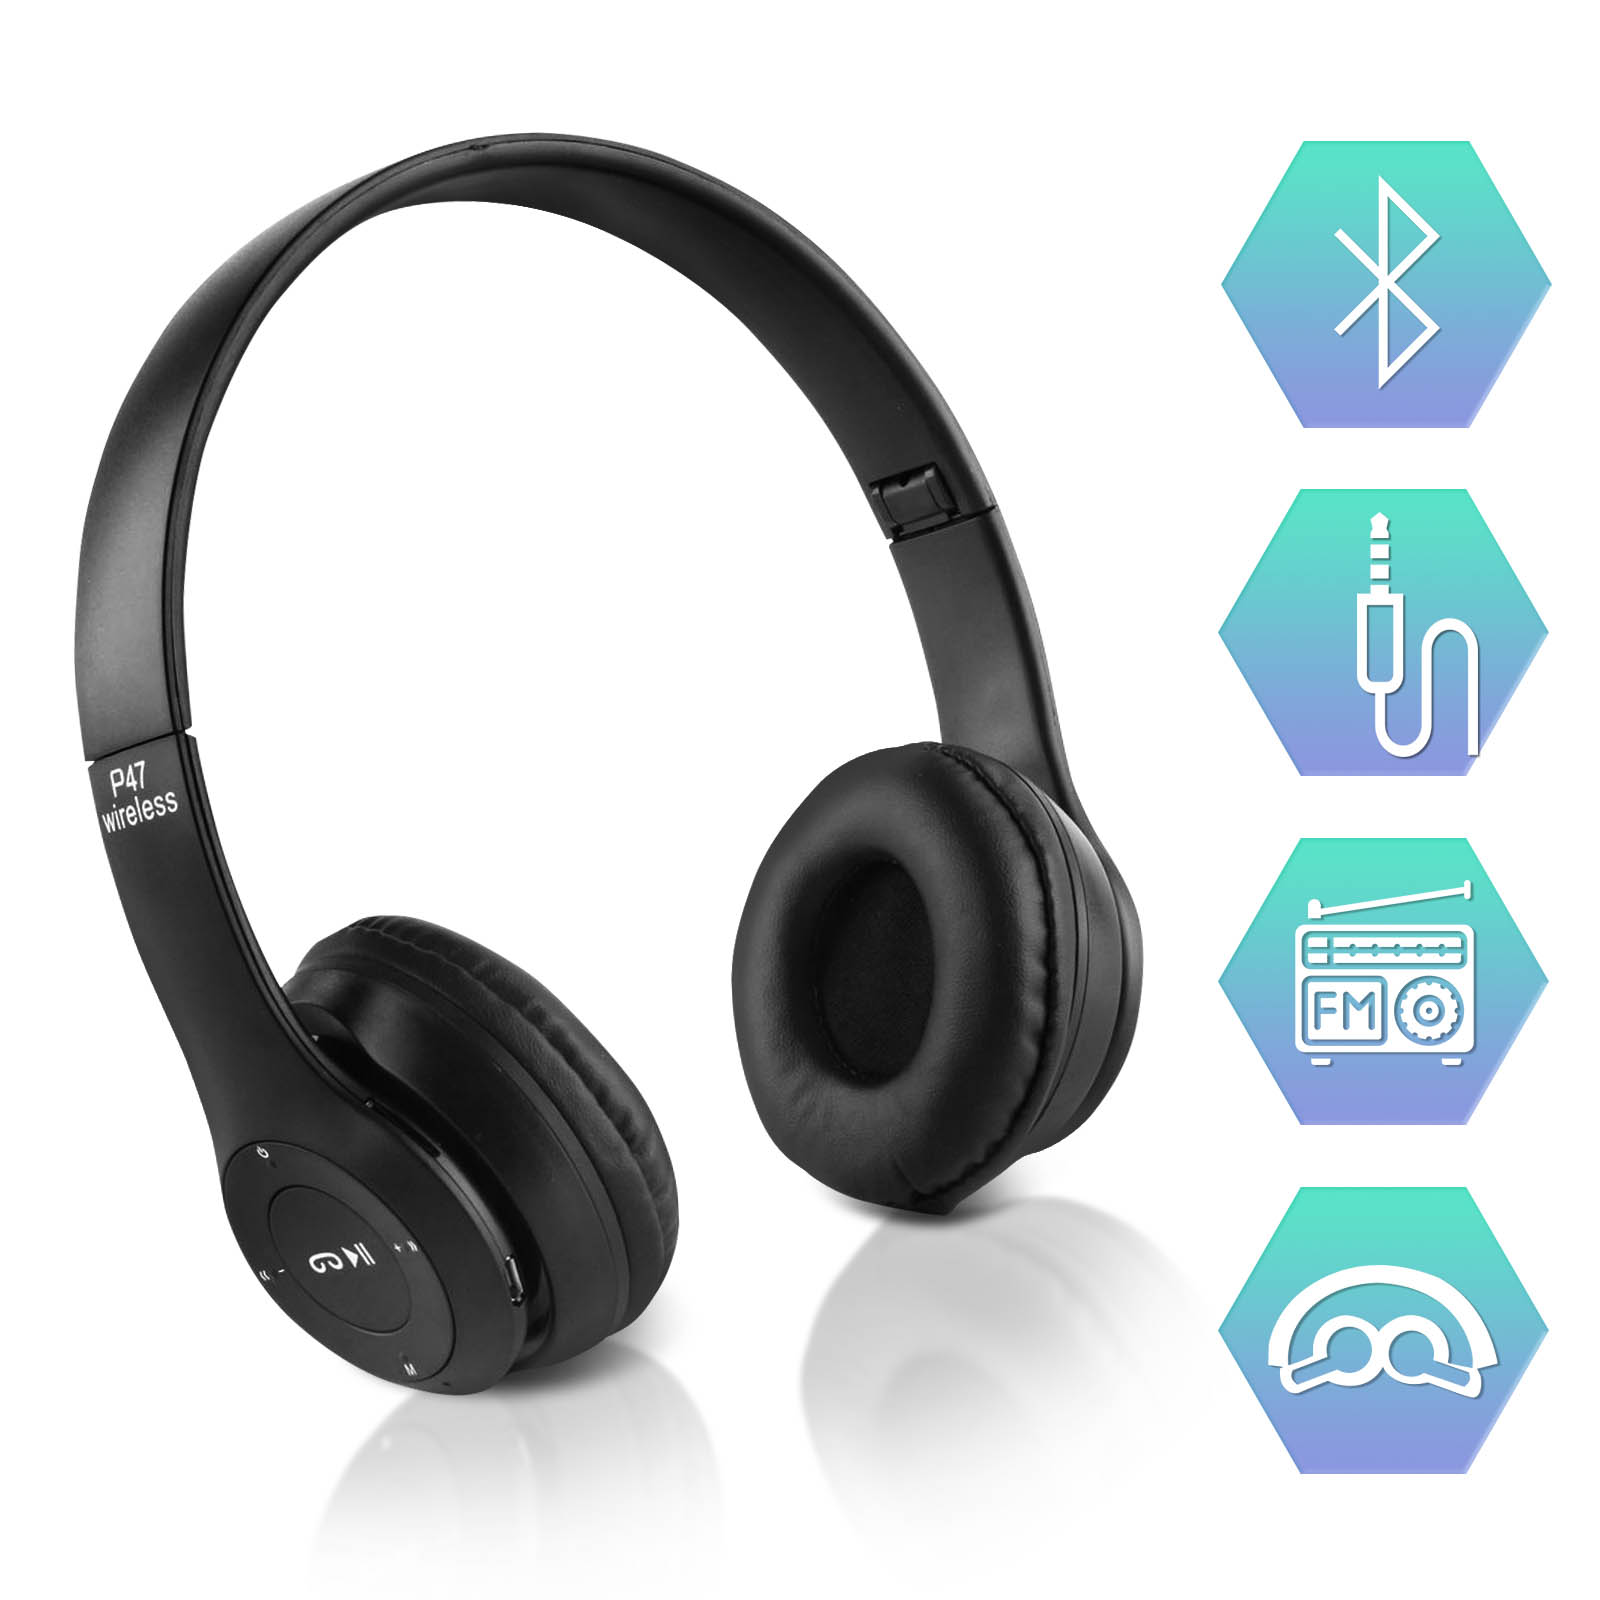 Casque Audio Stereo Bluetooth sans fil modèle P47, pliable - Noir - Français